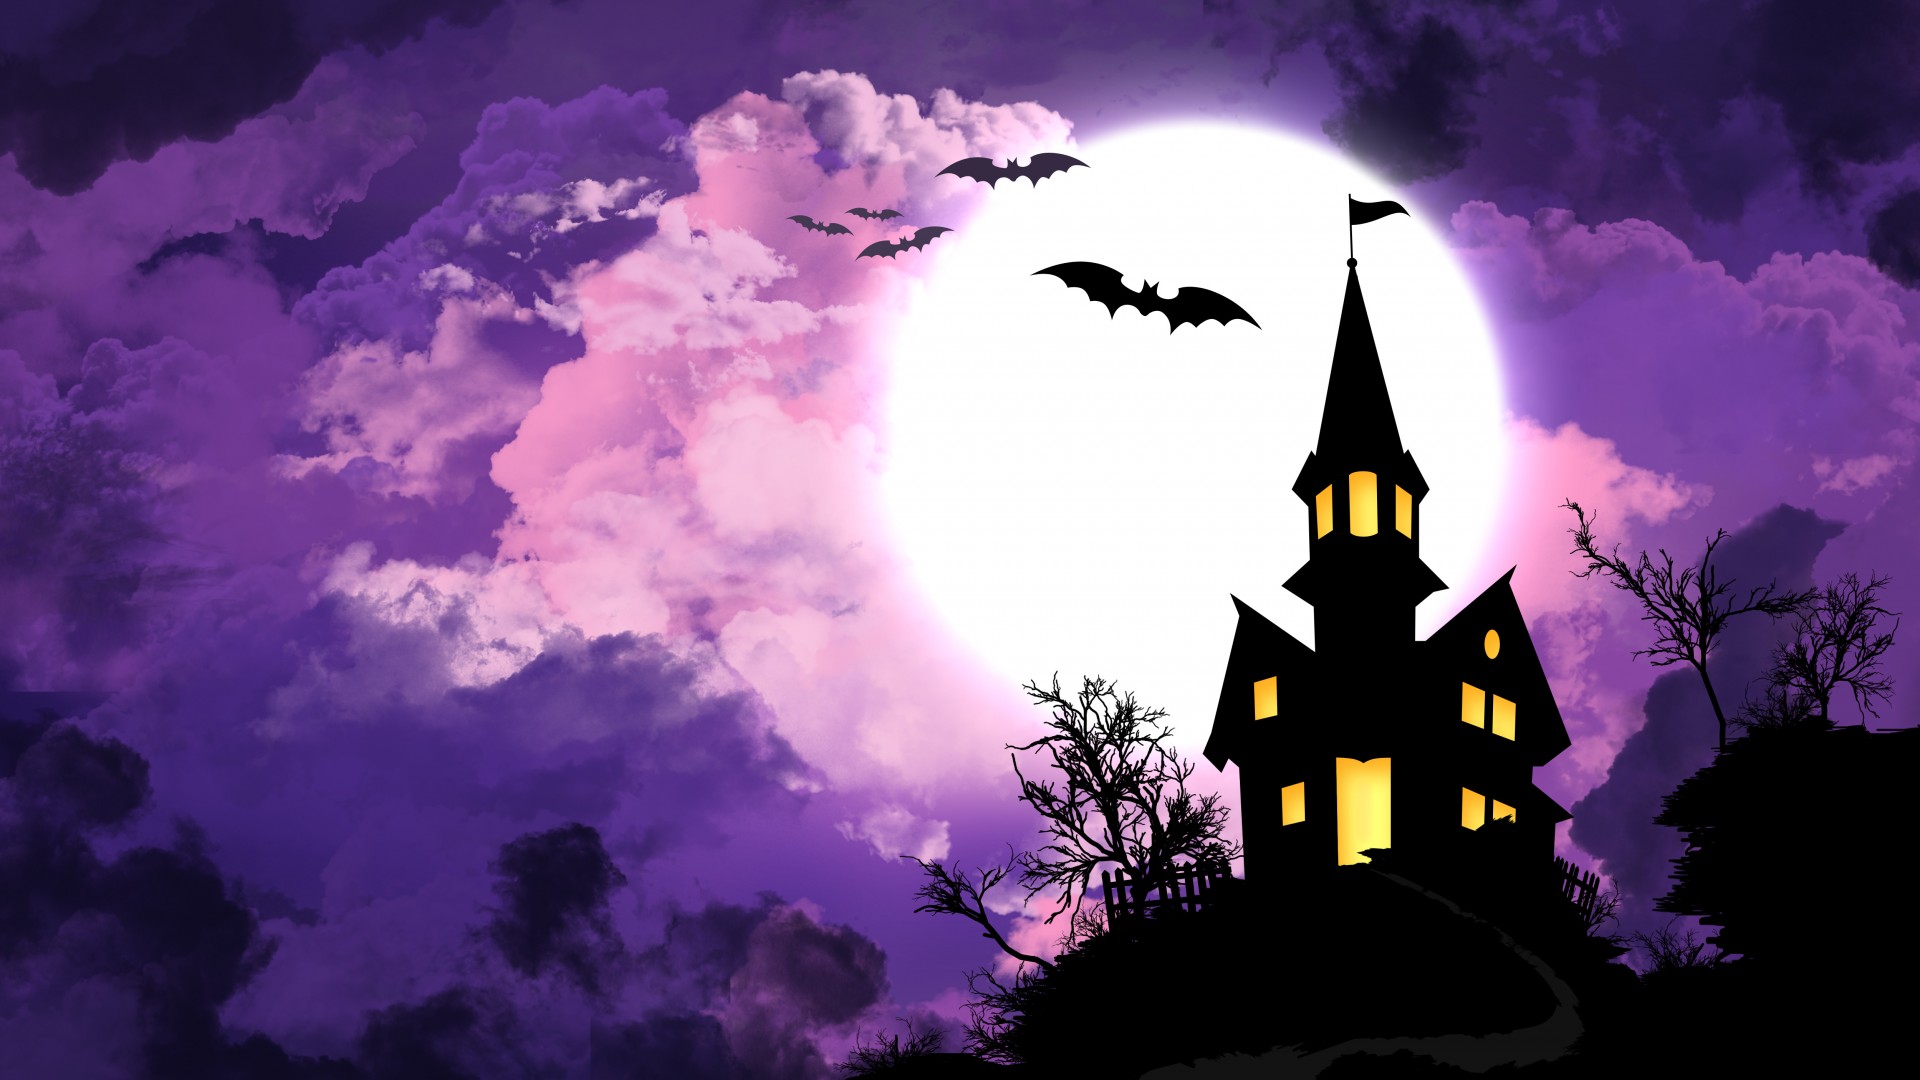 Halloween Bats best wallpaper